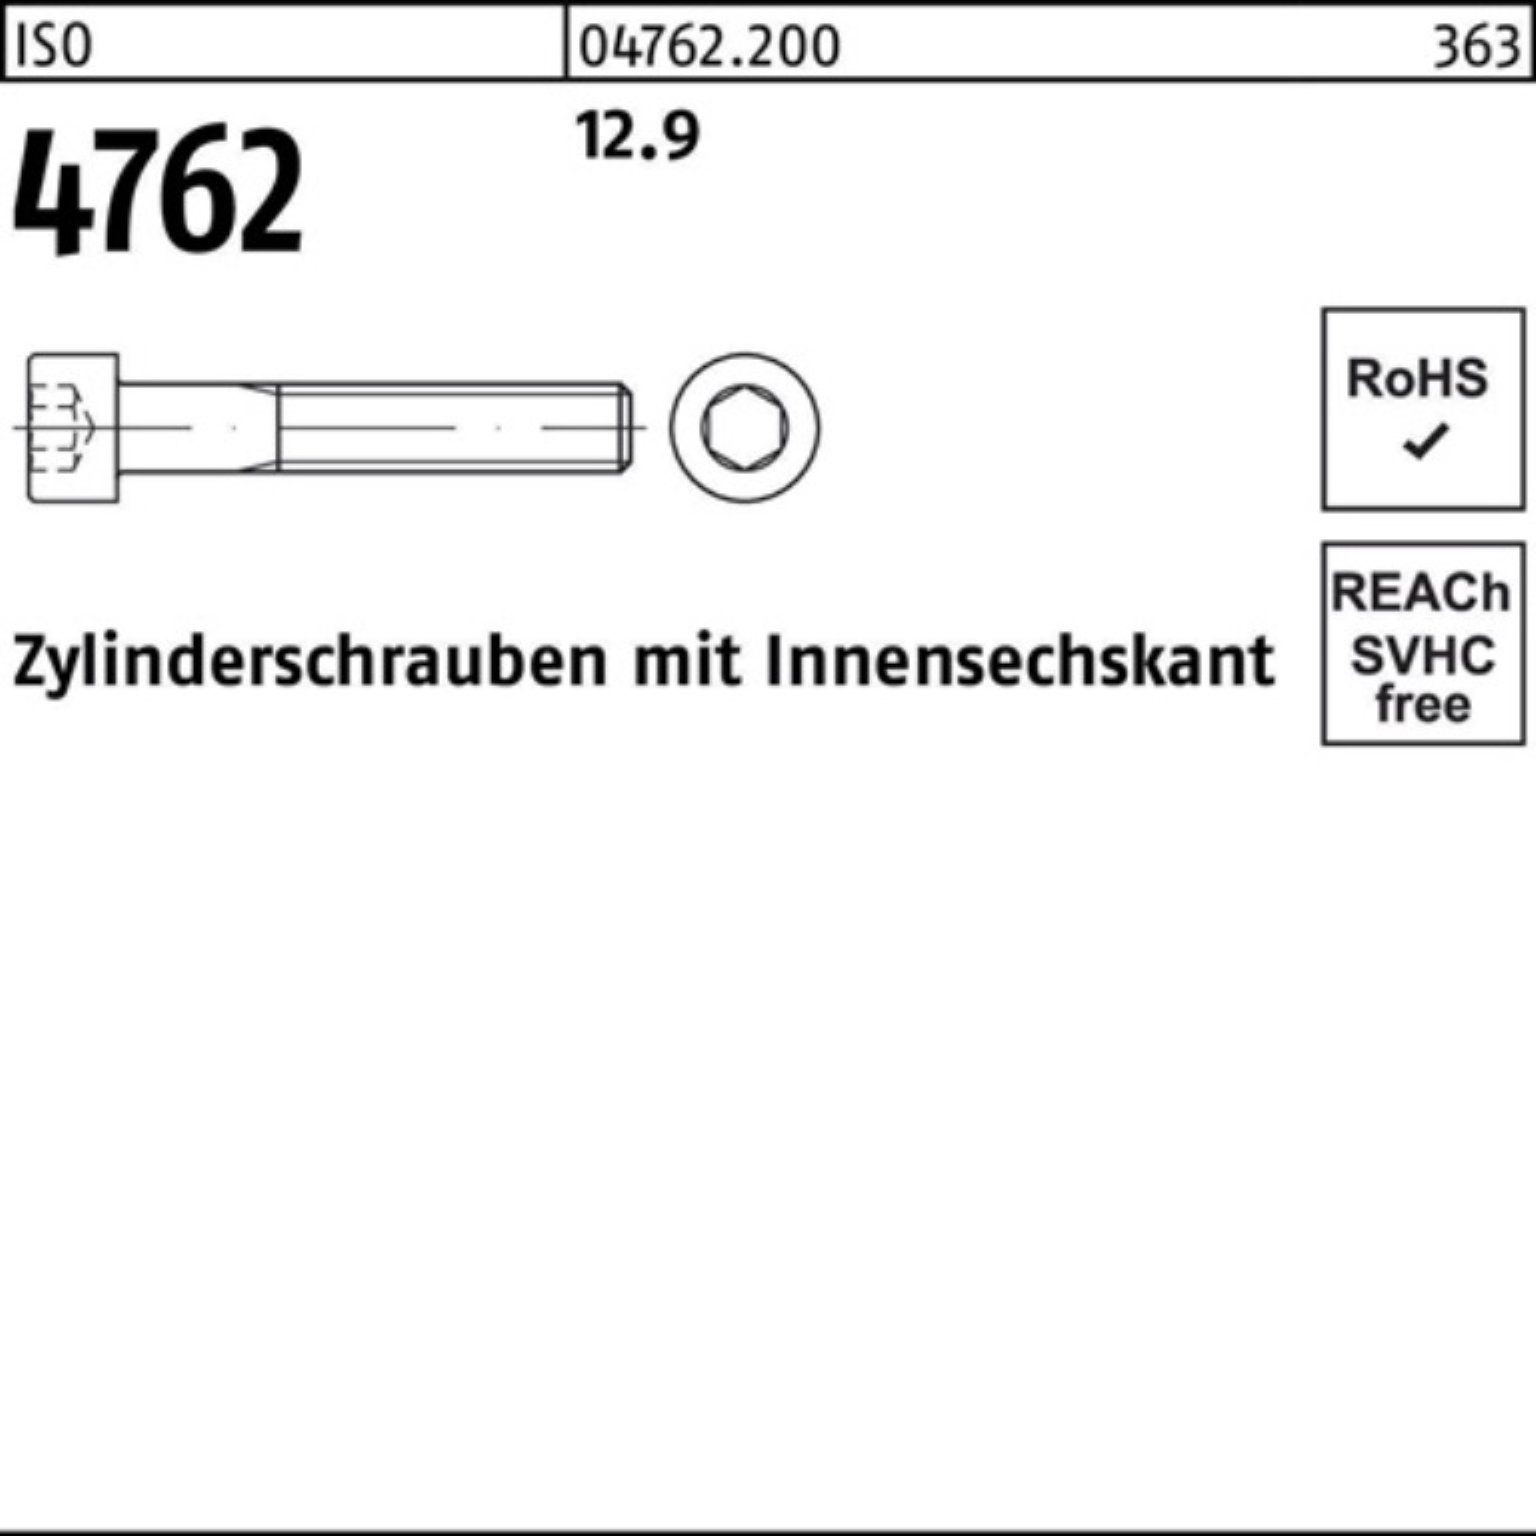 Stück 12.9 Reyher Zylinderschraube 4762 1 160 ISO M22x Zylinderschraube Innen-6kt Pack 100er